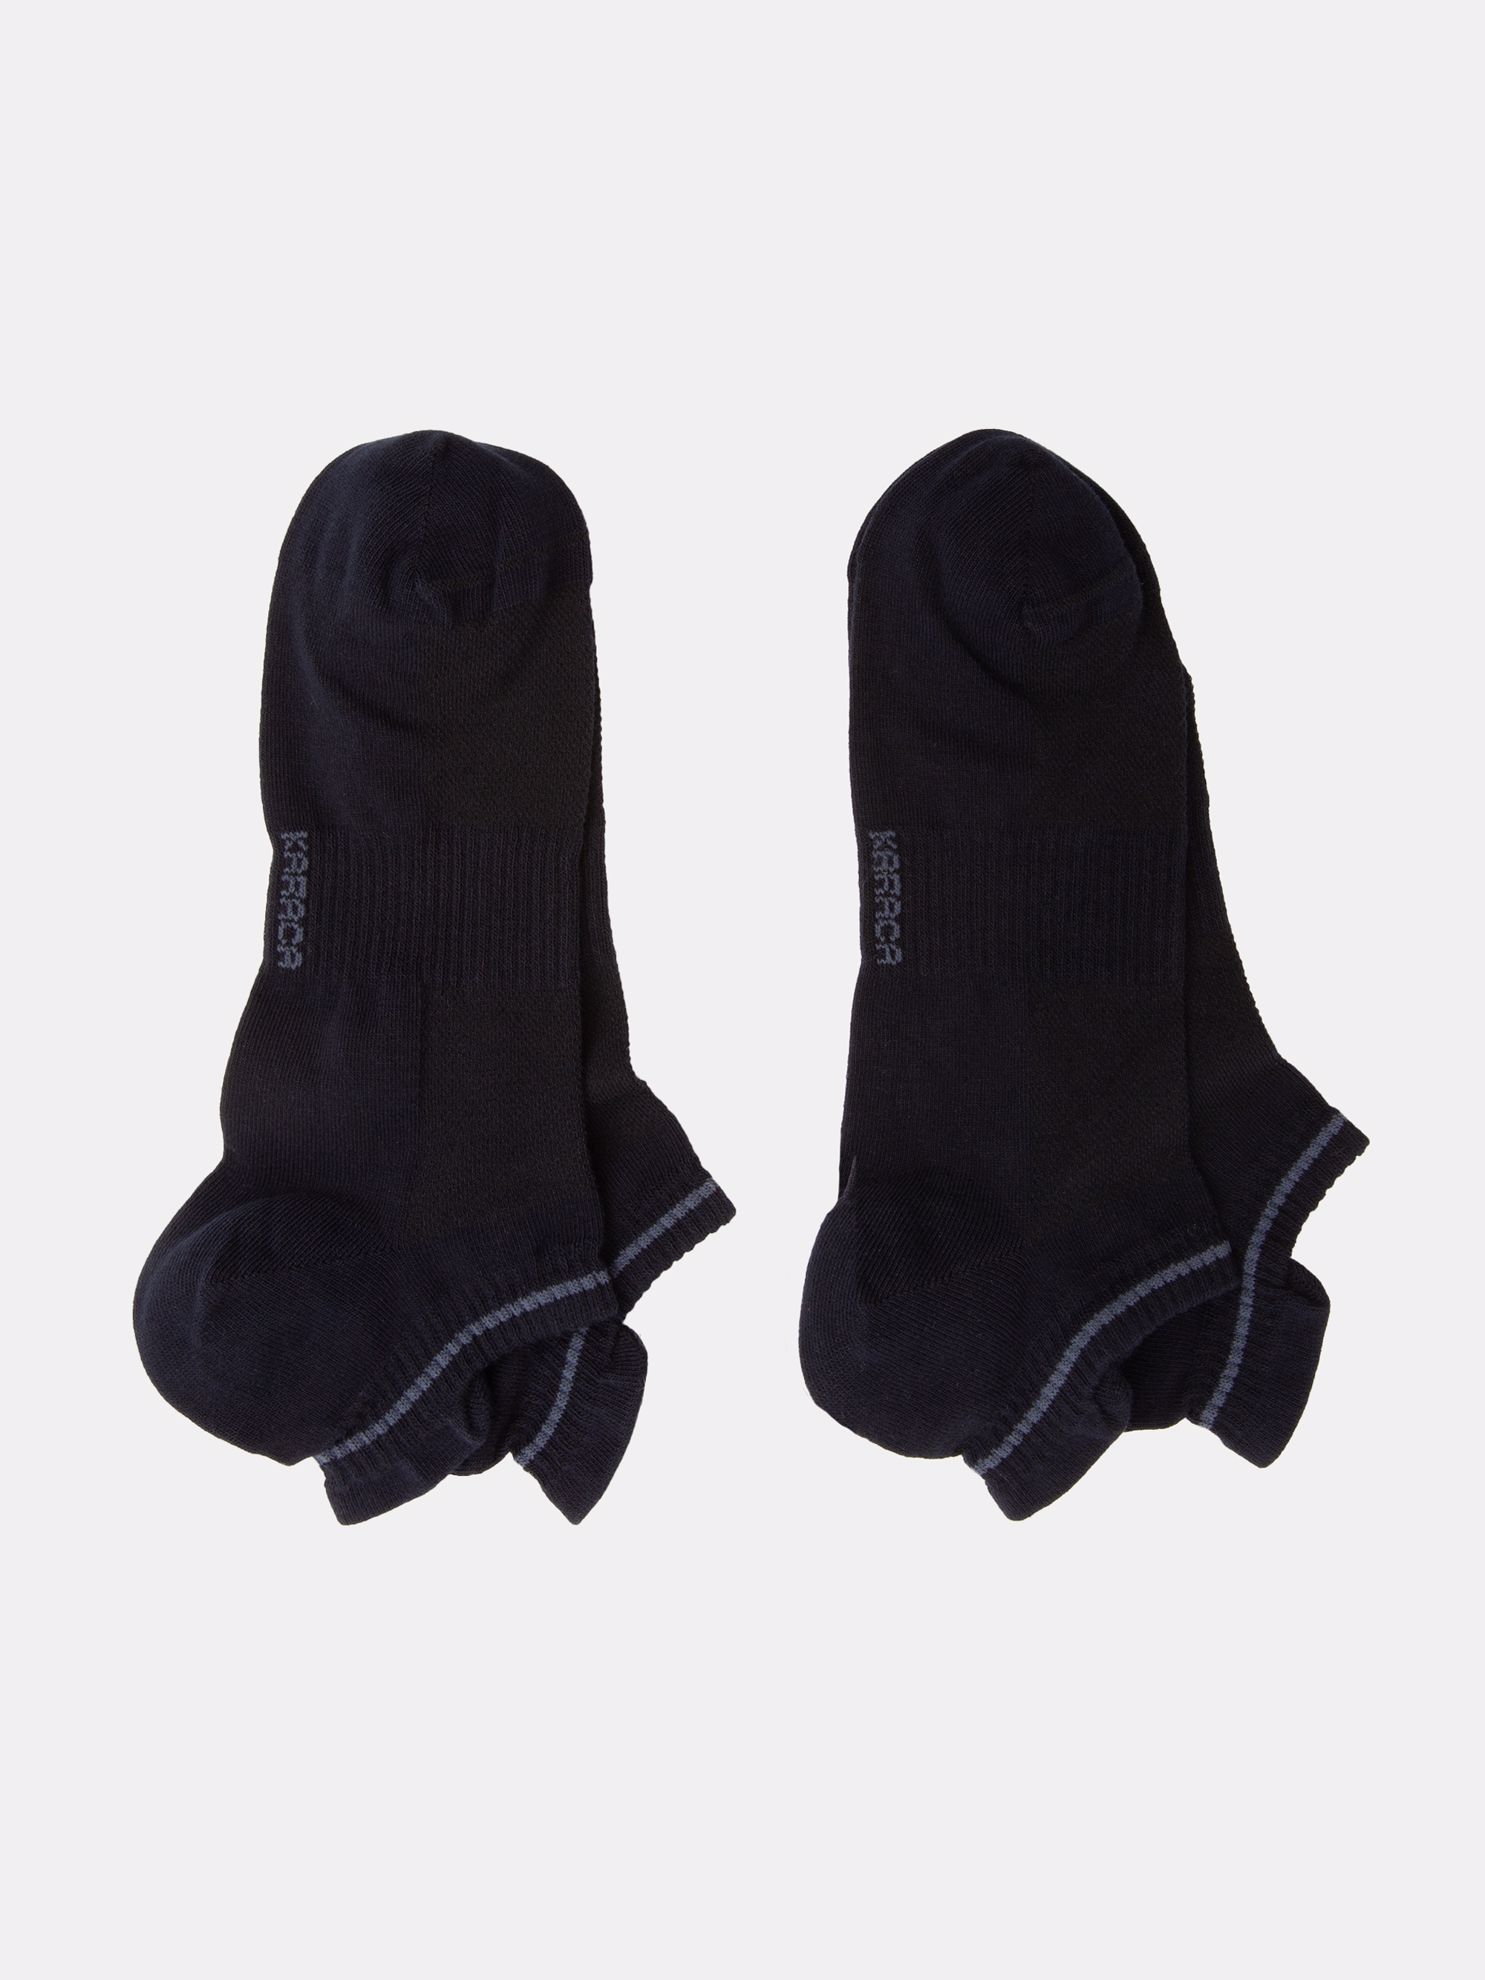 Karaca Erkek Soket Çorap-Lacivert/Lacivert. ürün görseli